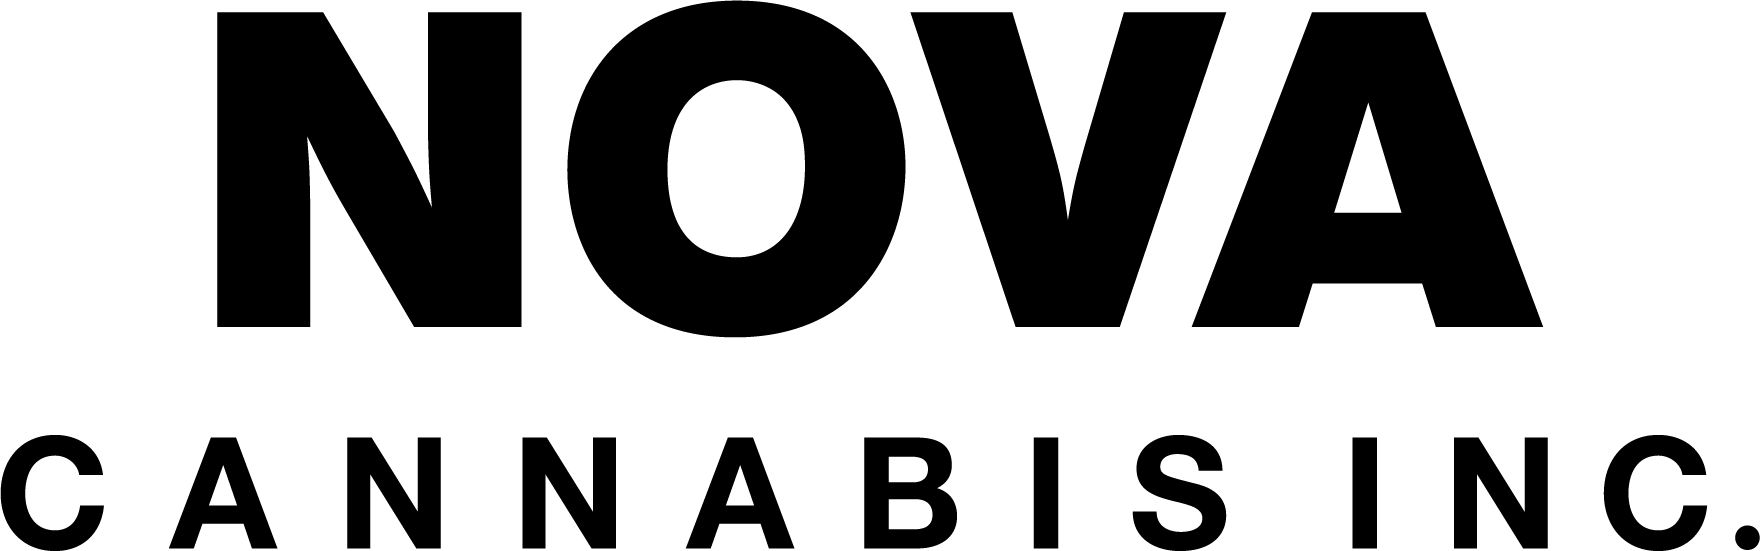 logo - Qu'est-il arrivé à Nova Cannabis ? - Comparaison GasDank